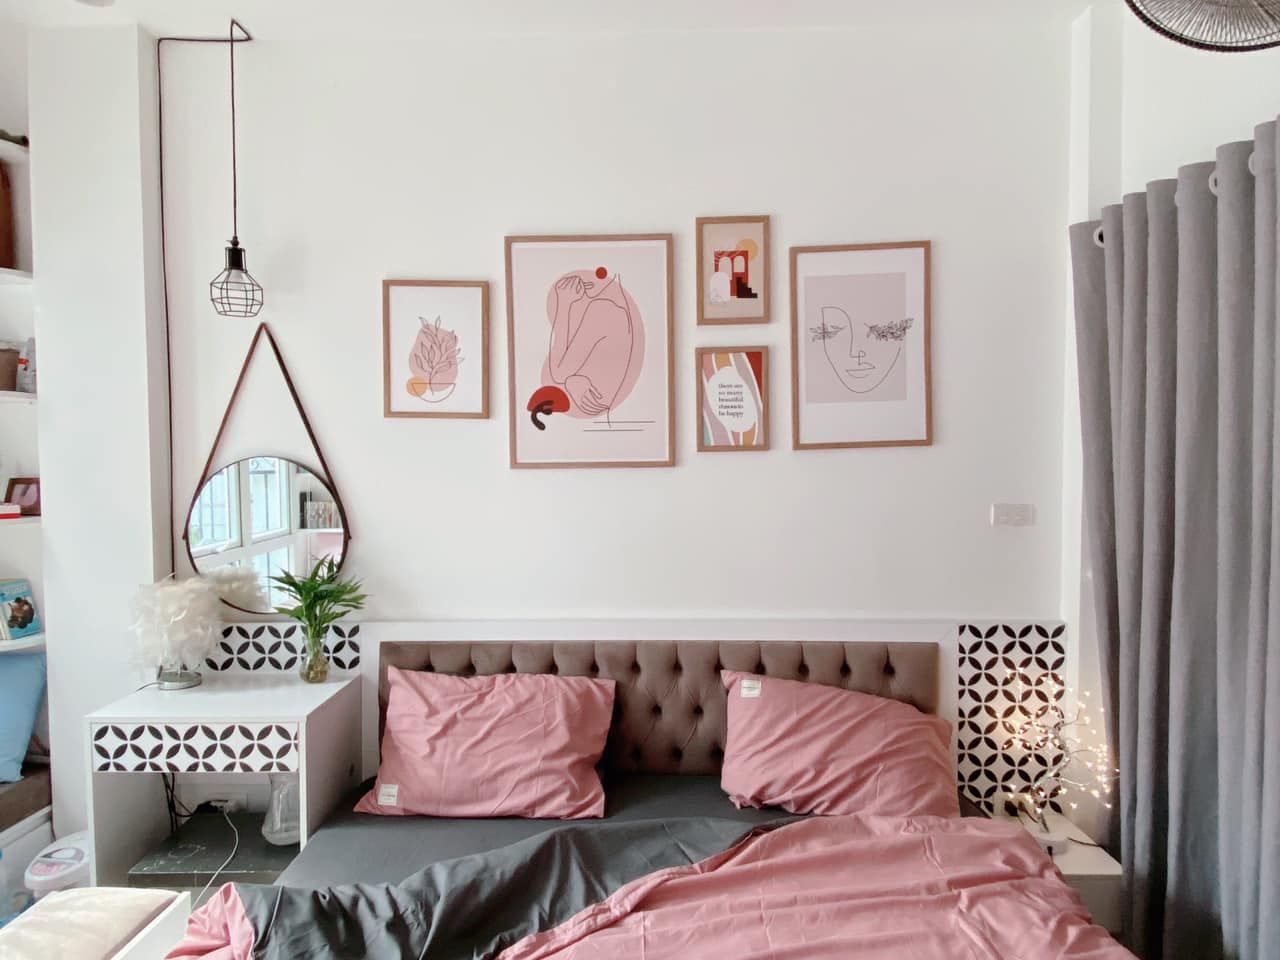 Căn phòng trở nên nổi bật hơn với bộ ga gối màu hồng xinh xắn, đáng yêu